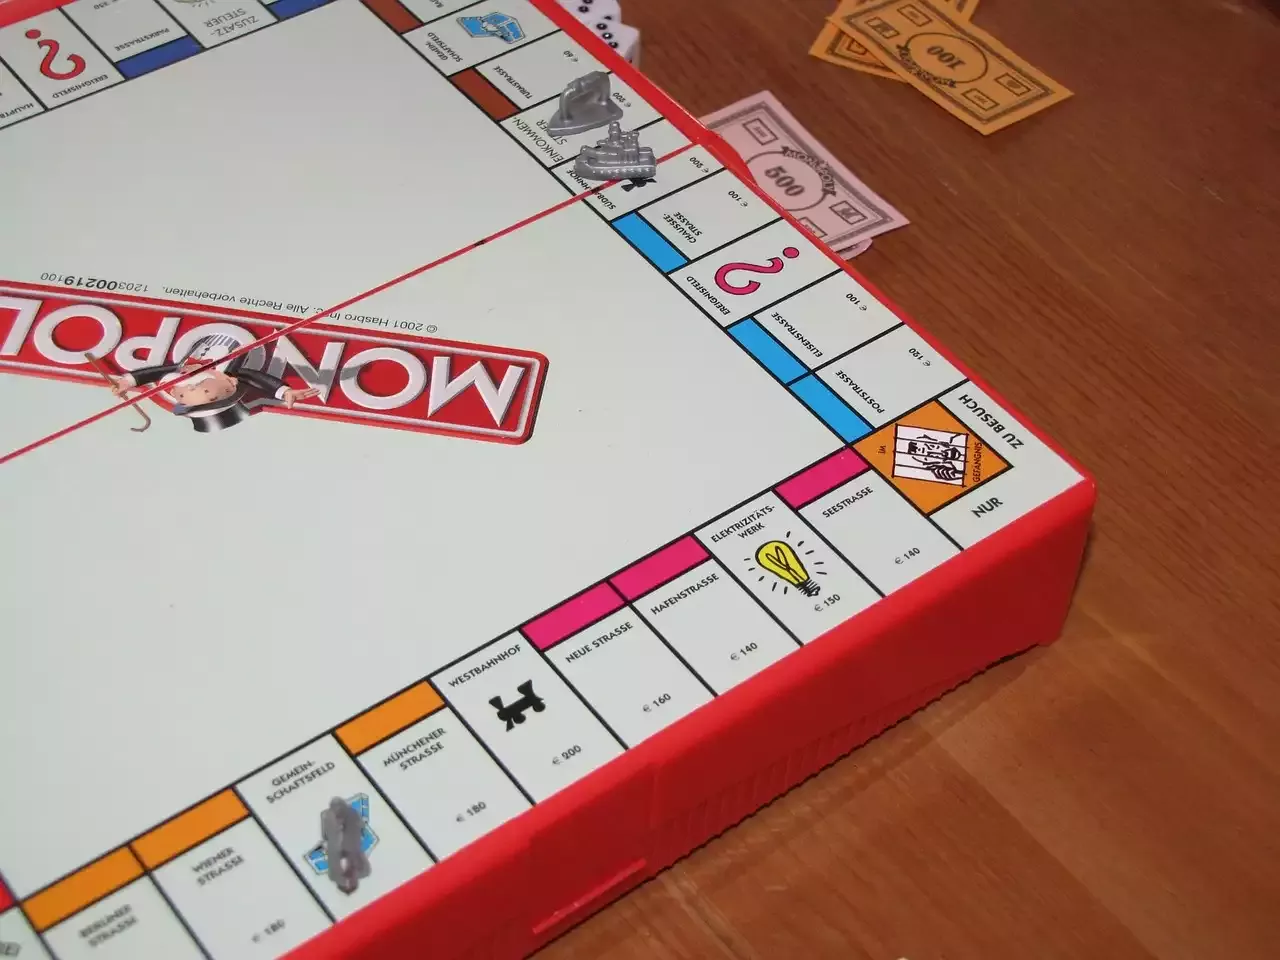 Viele Leute spielen Monopoly als Hobby